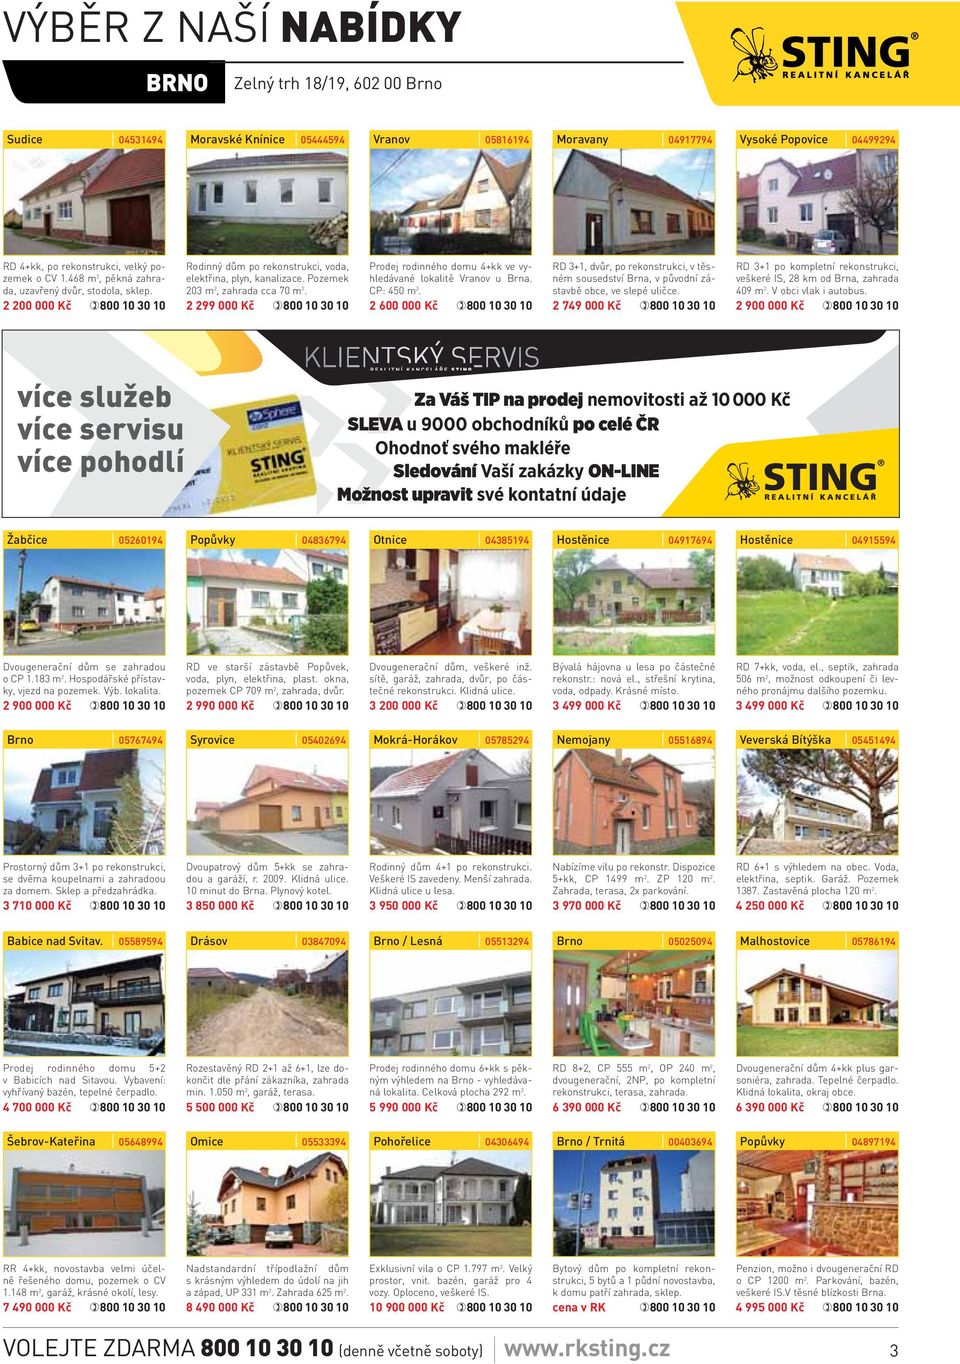 2 299 000 Kč Prodej rodinného domu 4+kk ve vyhledávané lokalitě Vranov u Brna. CP: 450 m 2.